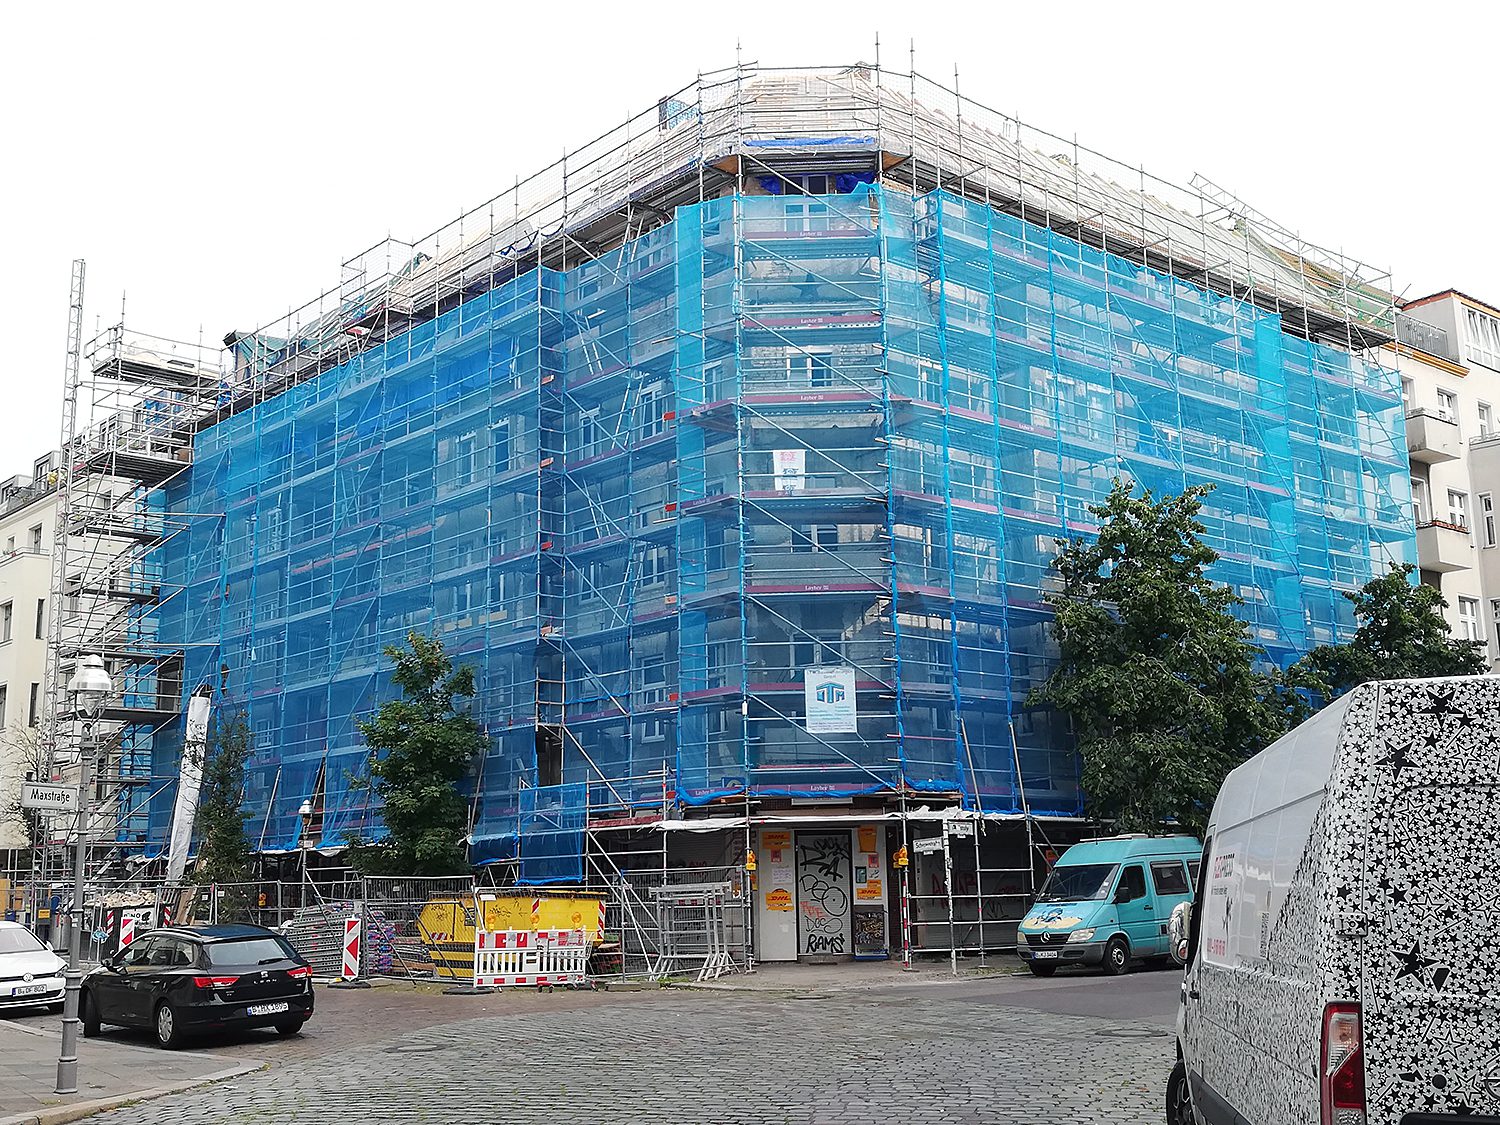 Das Haus in der Scheererstraße 8 ist derzeit eingerüstet. Das Dach wird erneuert. Foto: Hensel